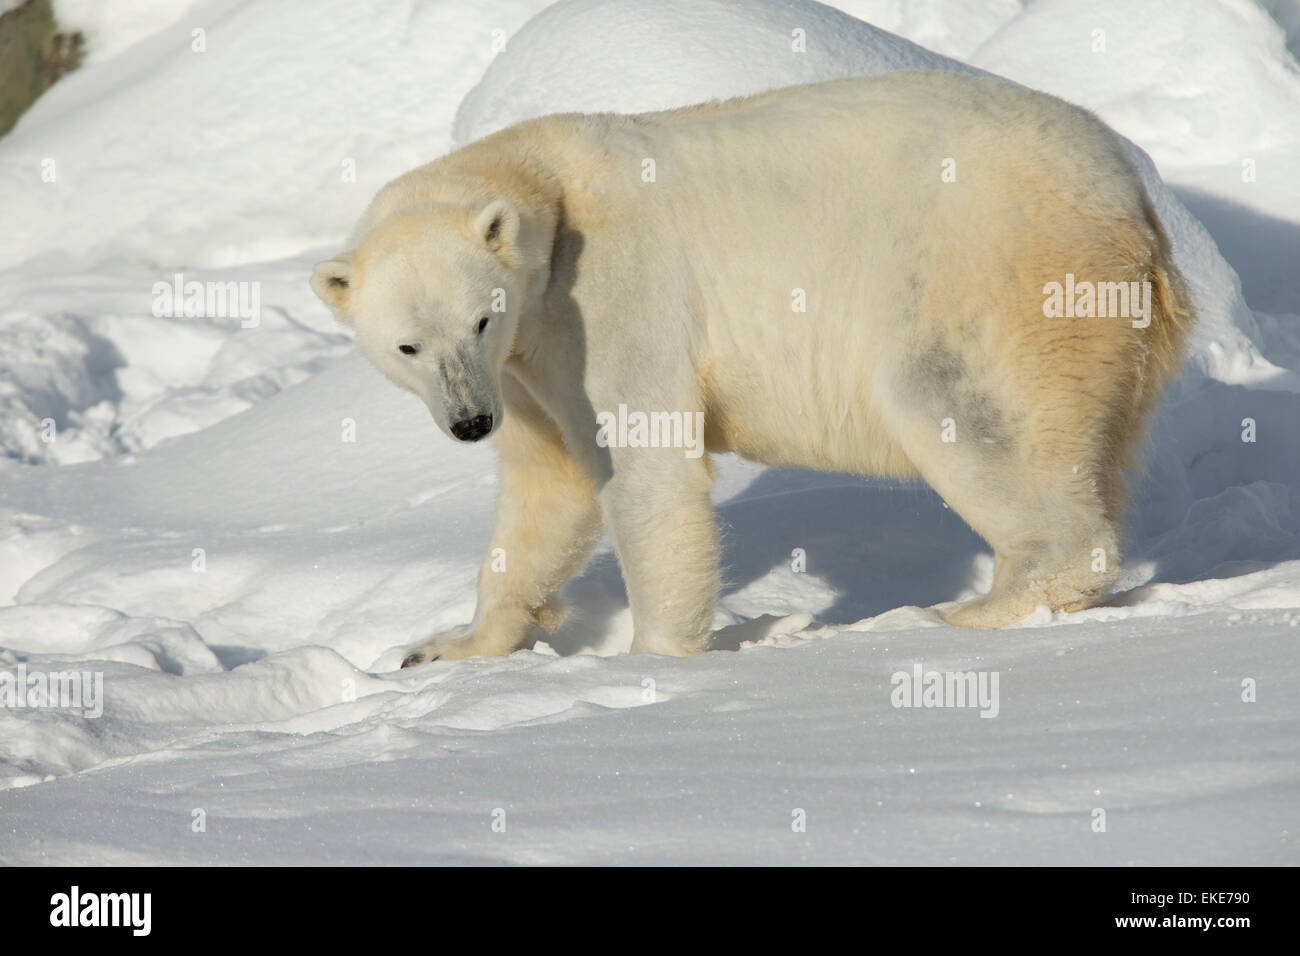 El oso polar (Ursus maritimus) mujeres caminando en la nieve fresca Foto de stock